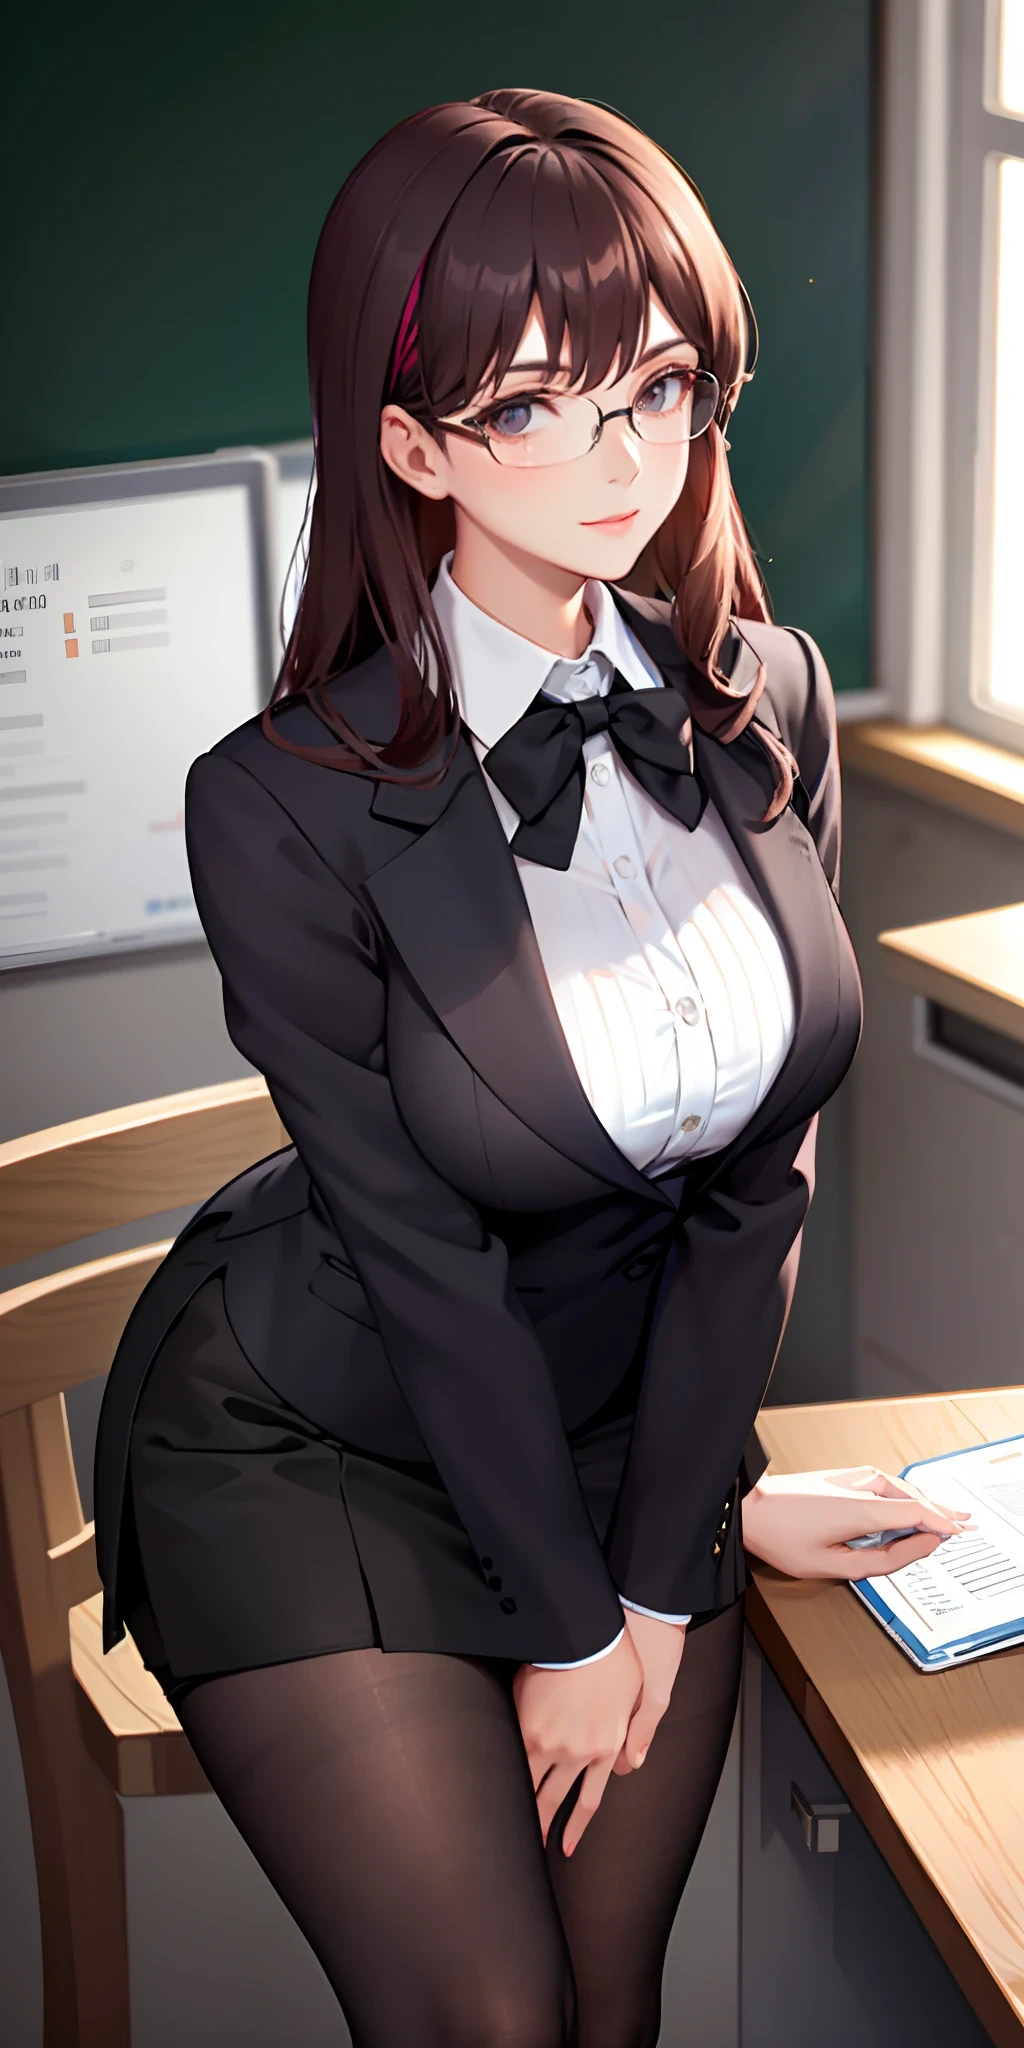 一位戴著眼鏡的優雅精緻的老師俏皮地打扮成短裙和黑絲襪的辦公室女士, 露出她豐滿的胸部